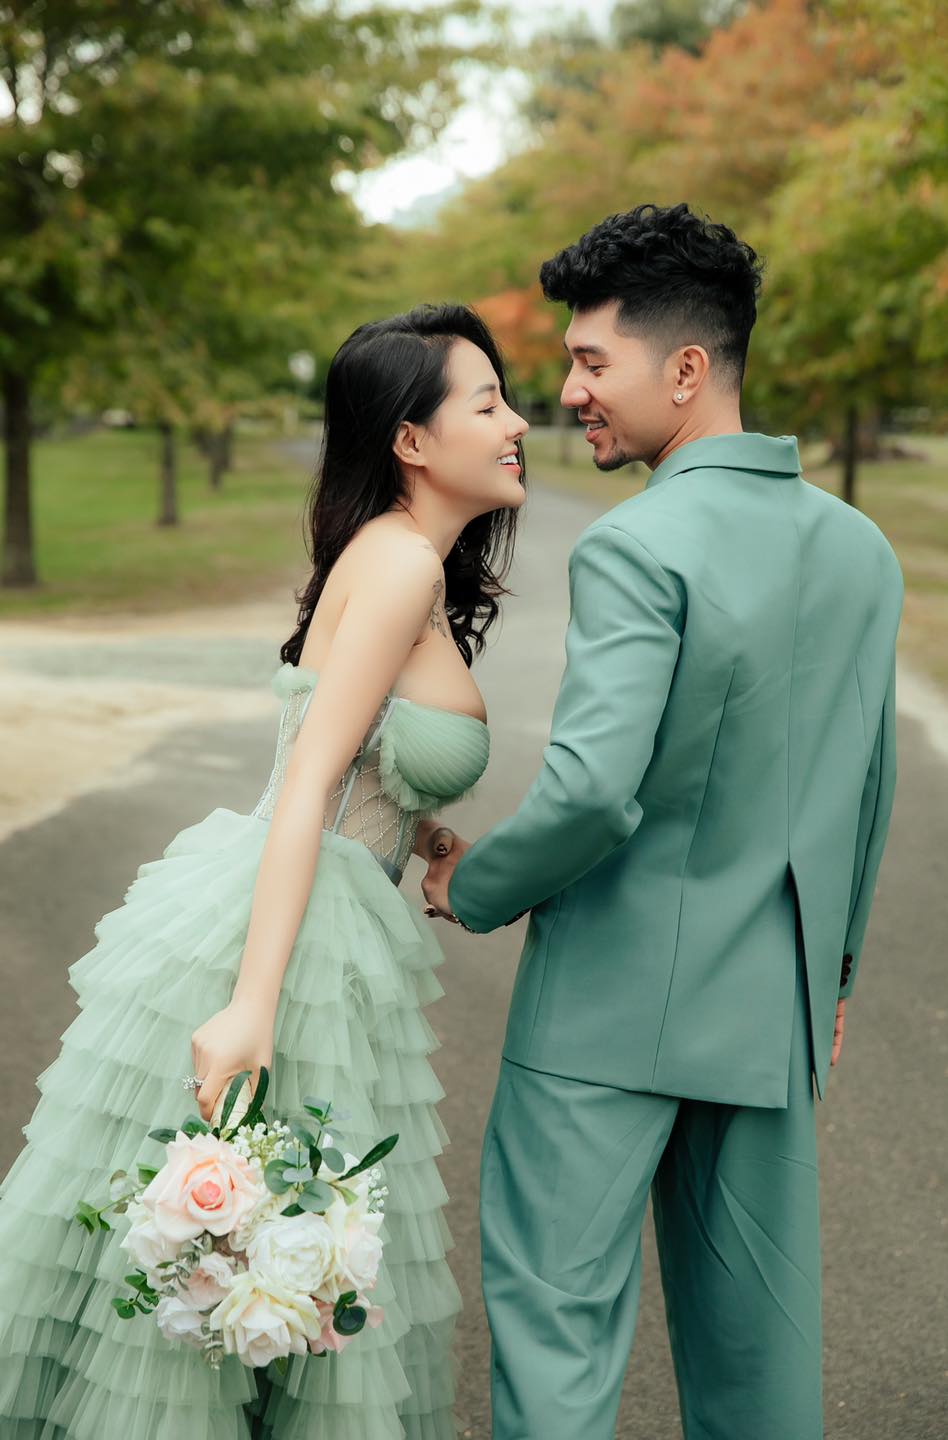 Lương Bằng Quang tung ảnh cưới với Ngân 98: 1001 khoảnh khắc cũng không hút mắt bằng vòng 1 cô dâu - Ảnh 6